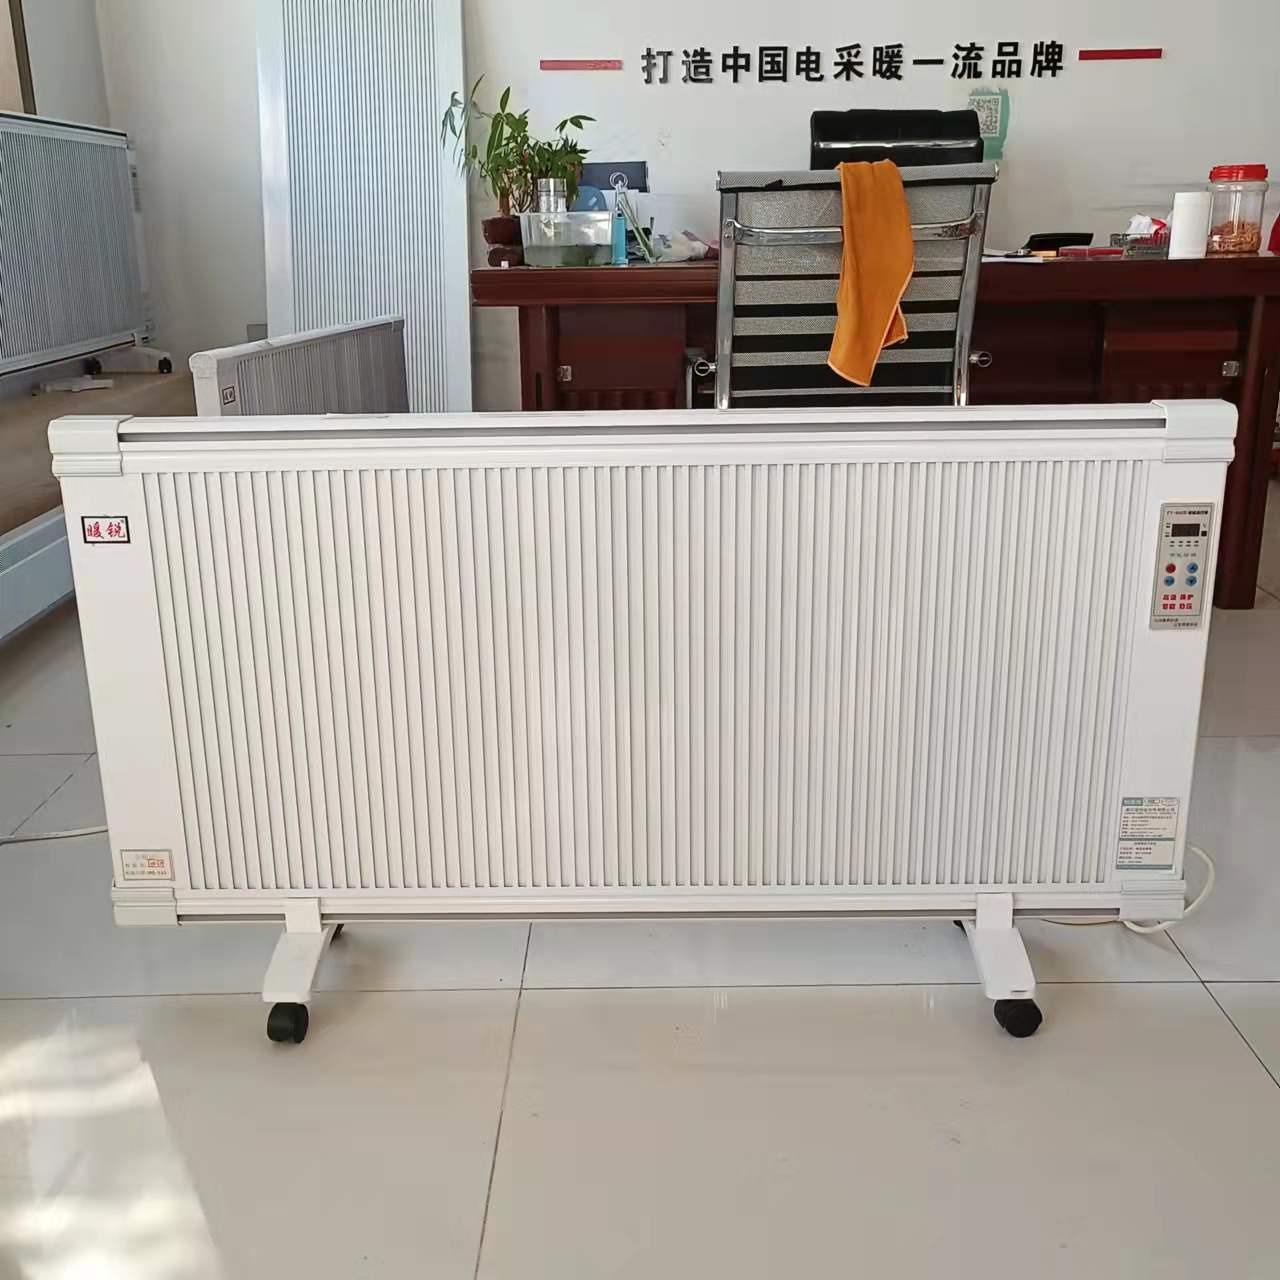 电暖器 碳纤维取暖器 暖硕 NS-2 碳晶电暖器 安装挂式电暖器欢迎选购图片